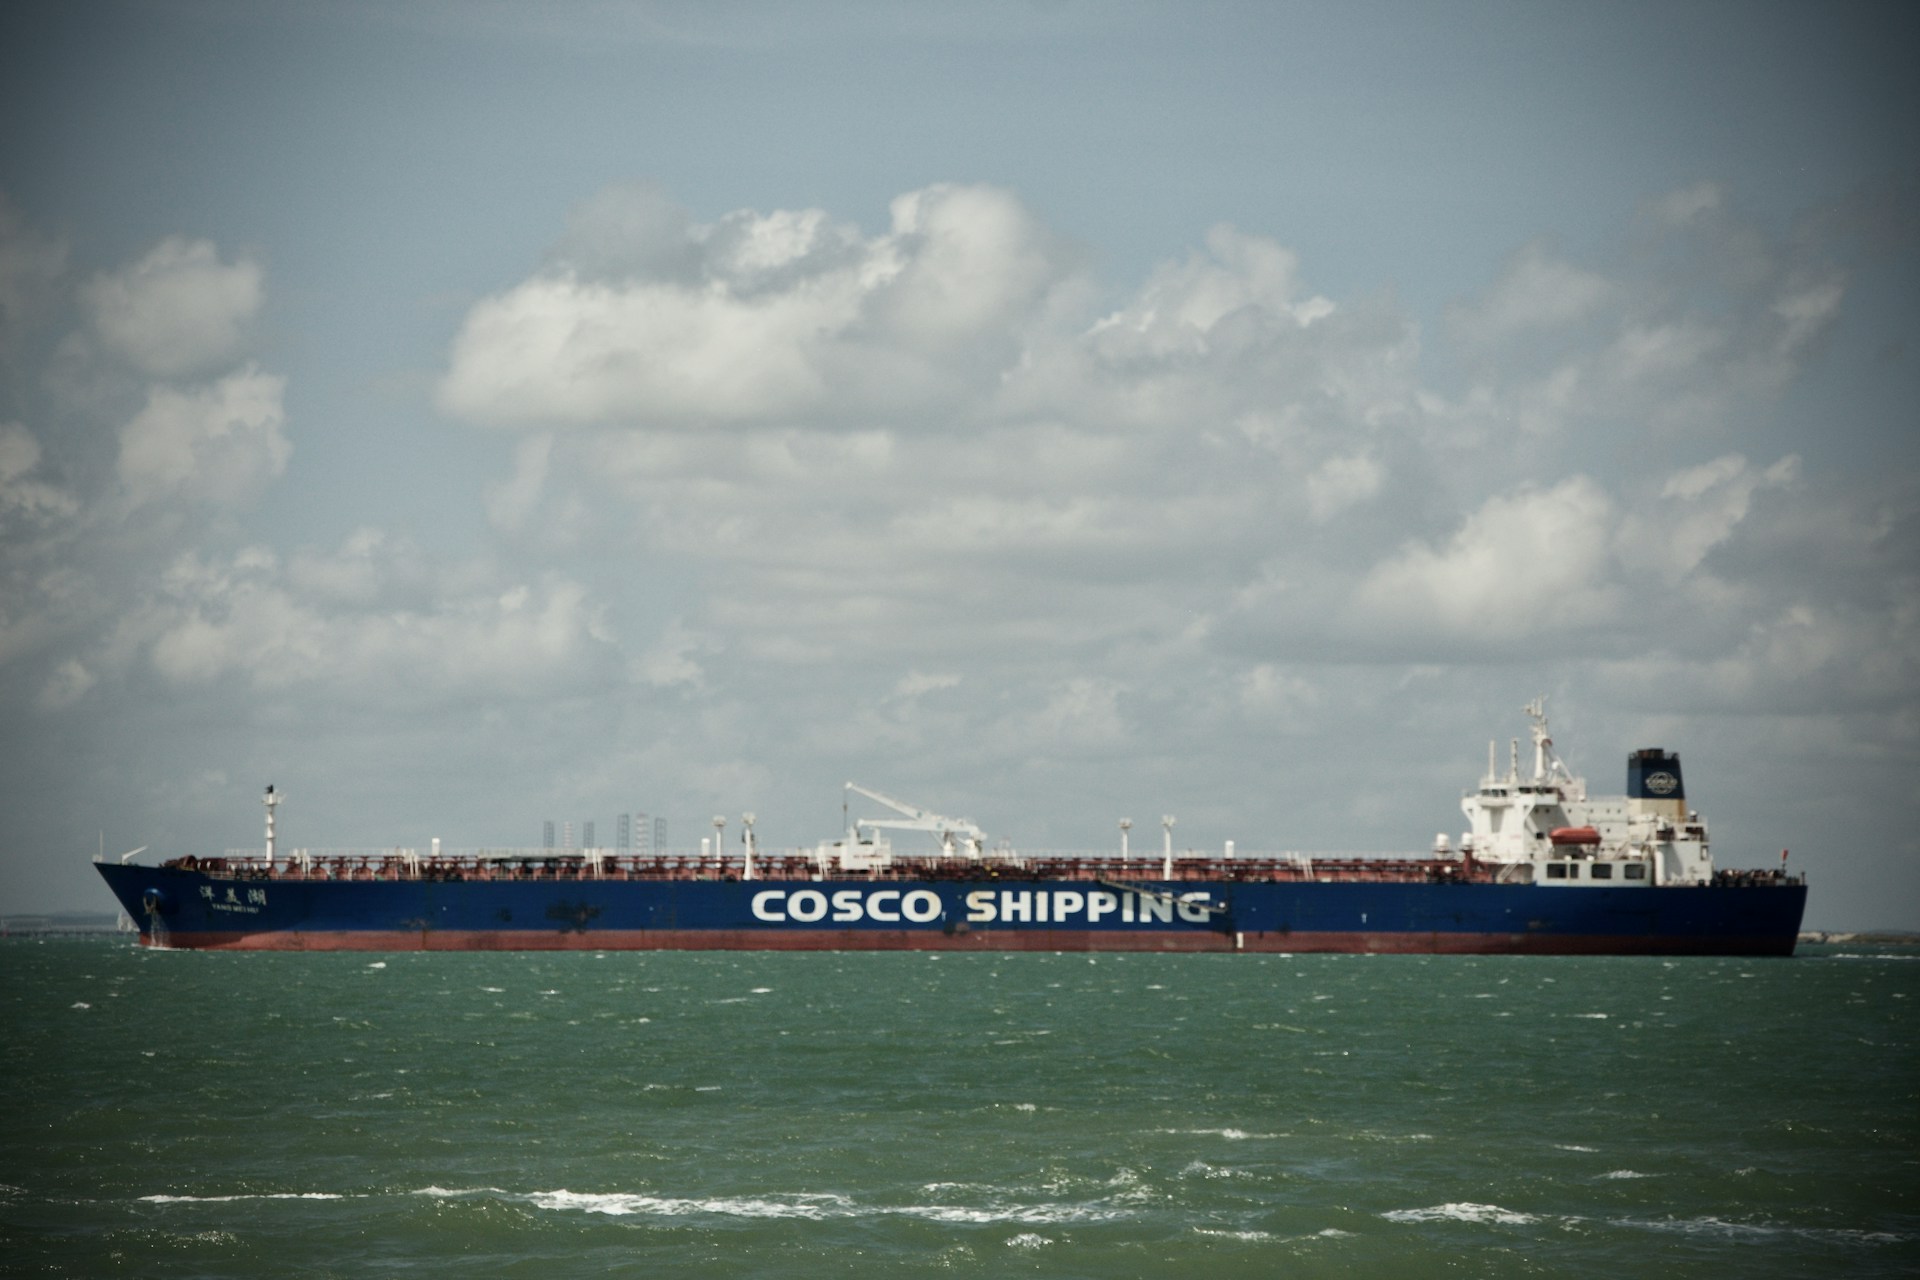 A COSCO Shipping vessel at sea